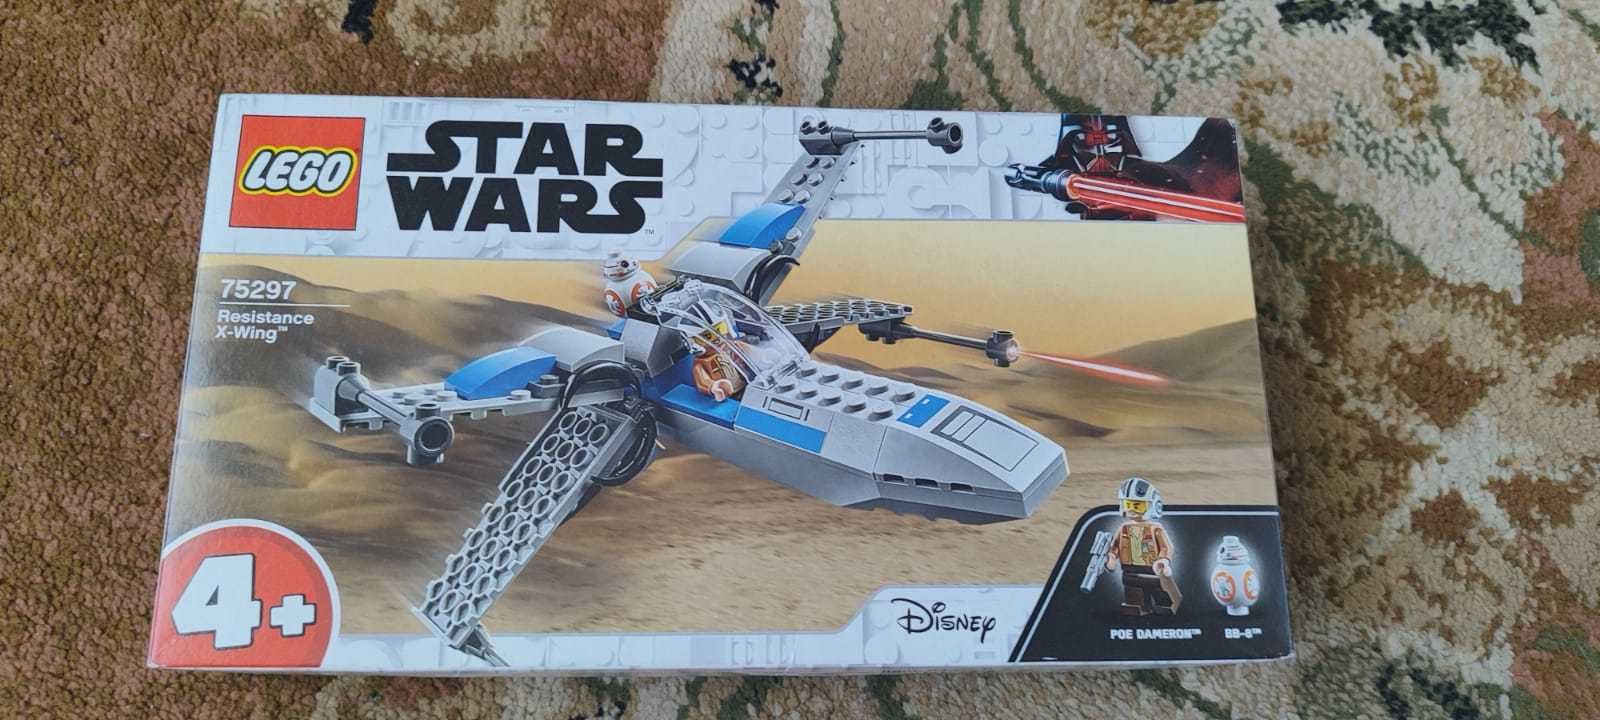 Lego 75297 Star Wars